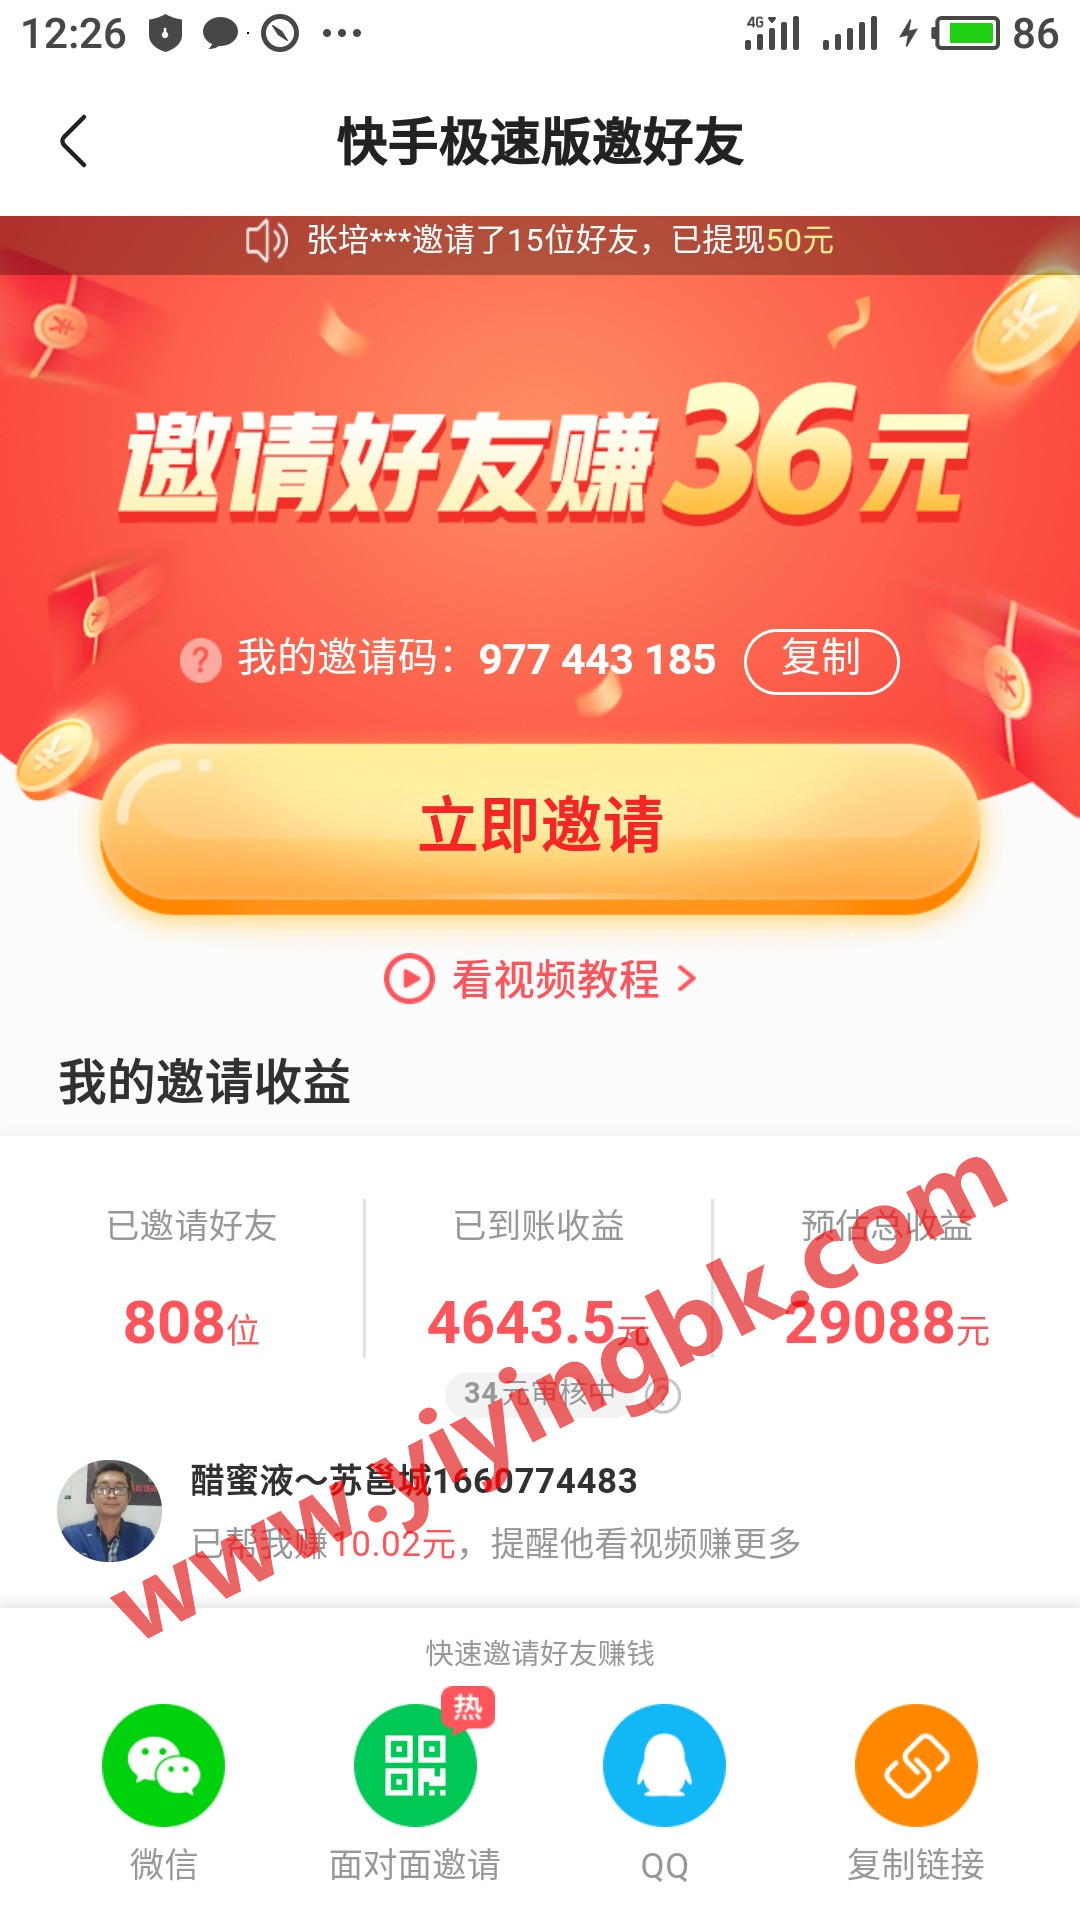 快手极速版，邀请好友免费赚36元红包，微信和支付宝提现秒到账。www.yiyingbk.com